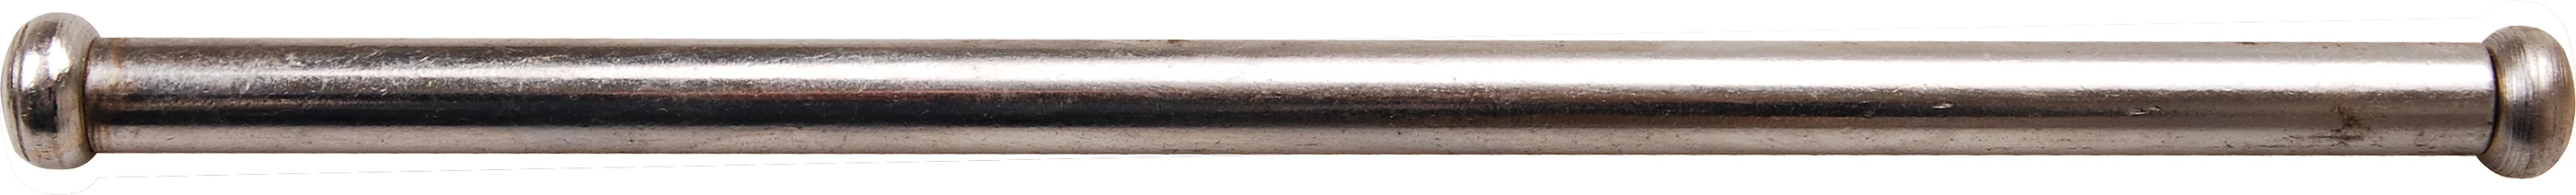 Stahlknebel für Schraubstöcke - 10,5 x 225 mm